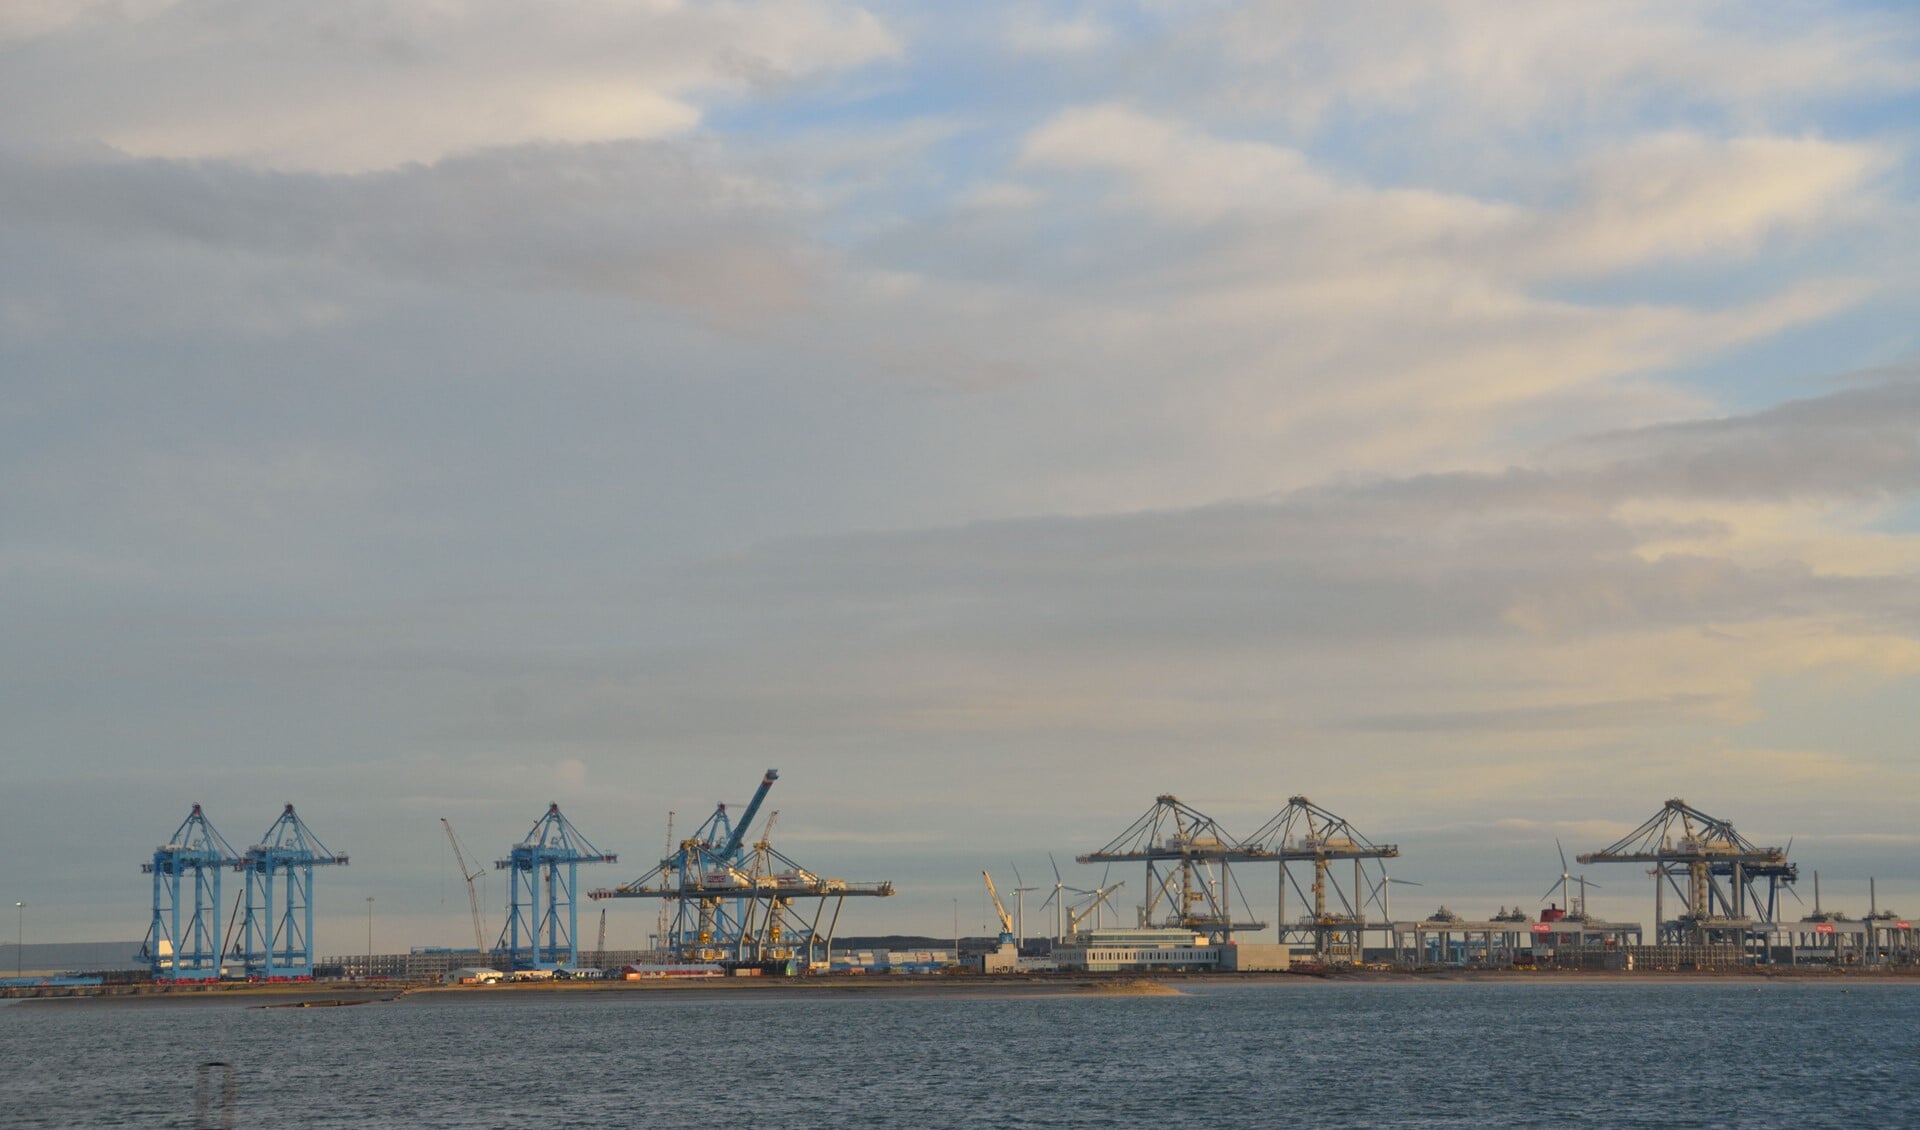 De aanleg van de nieuwe terminals heeft geleid tot onrust onder de havenwerknemers.